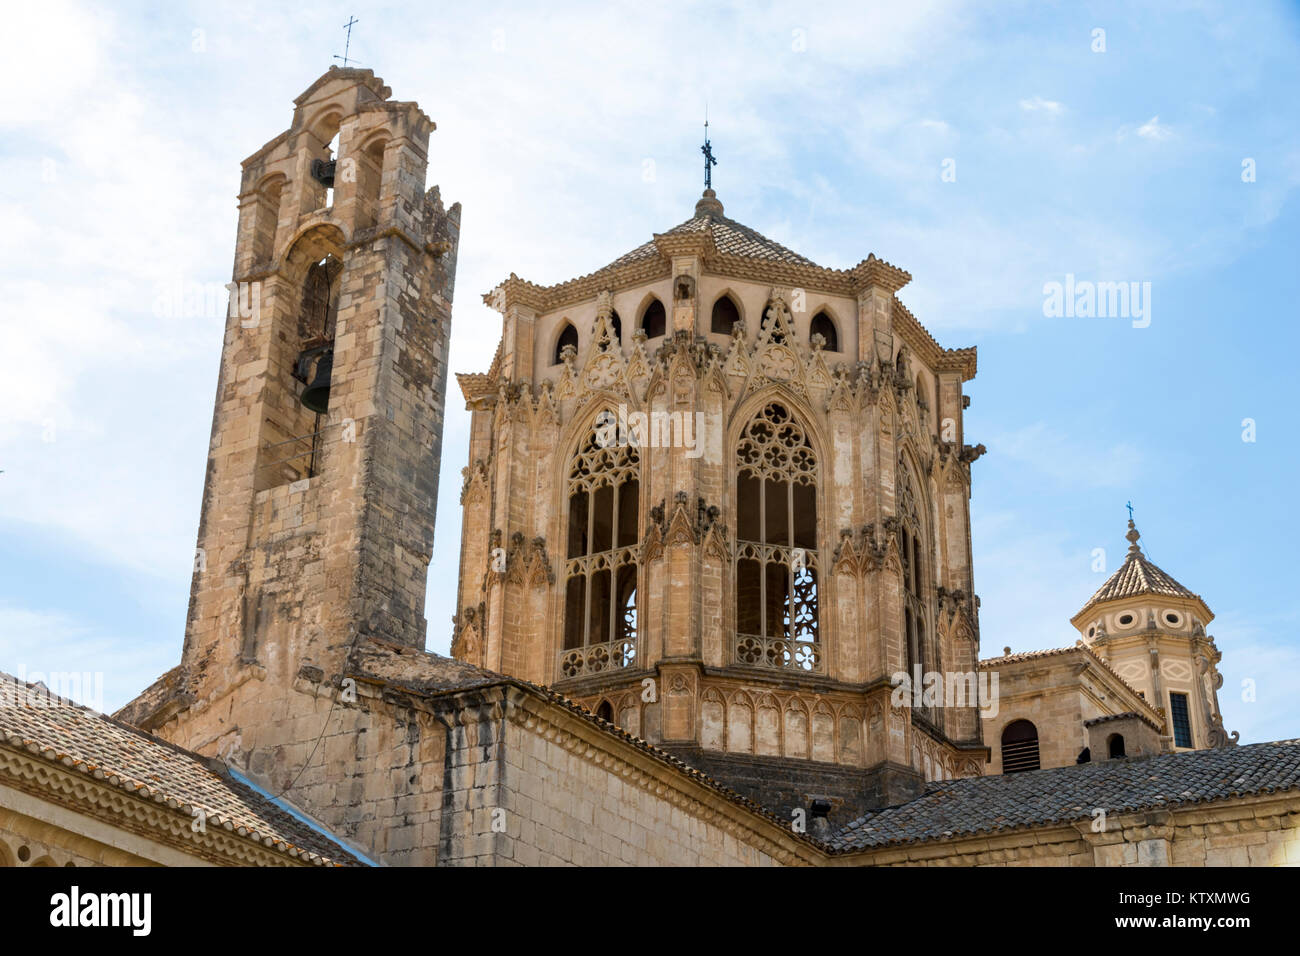 Die Laterne Turm der Königlichen Abtei Santa Maria de Poblet, ein Zisterzienserkloster in Katalonien, Spanien, Pantheon der Könige der Krone von Arago Stockfoto